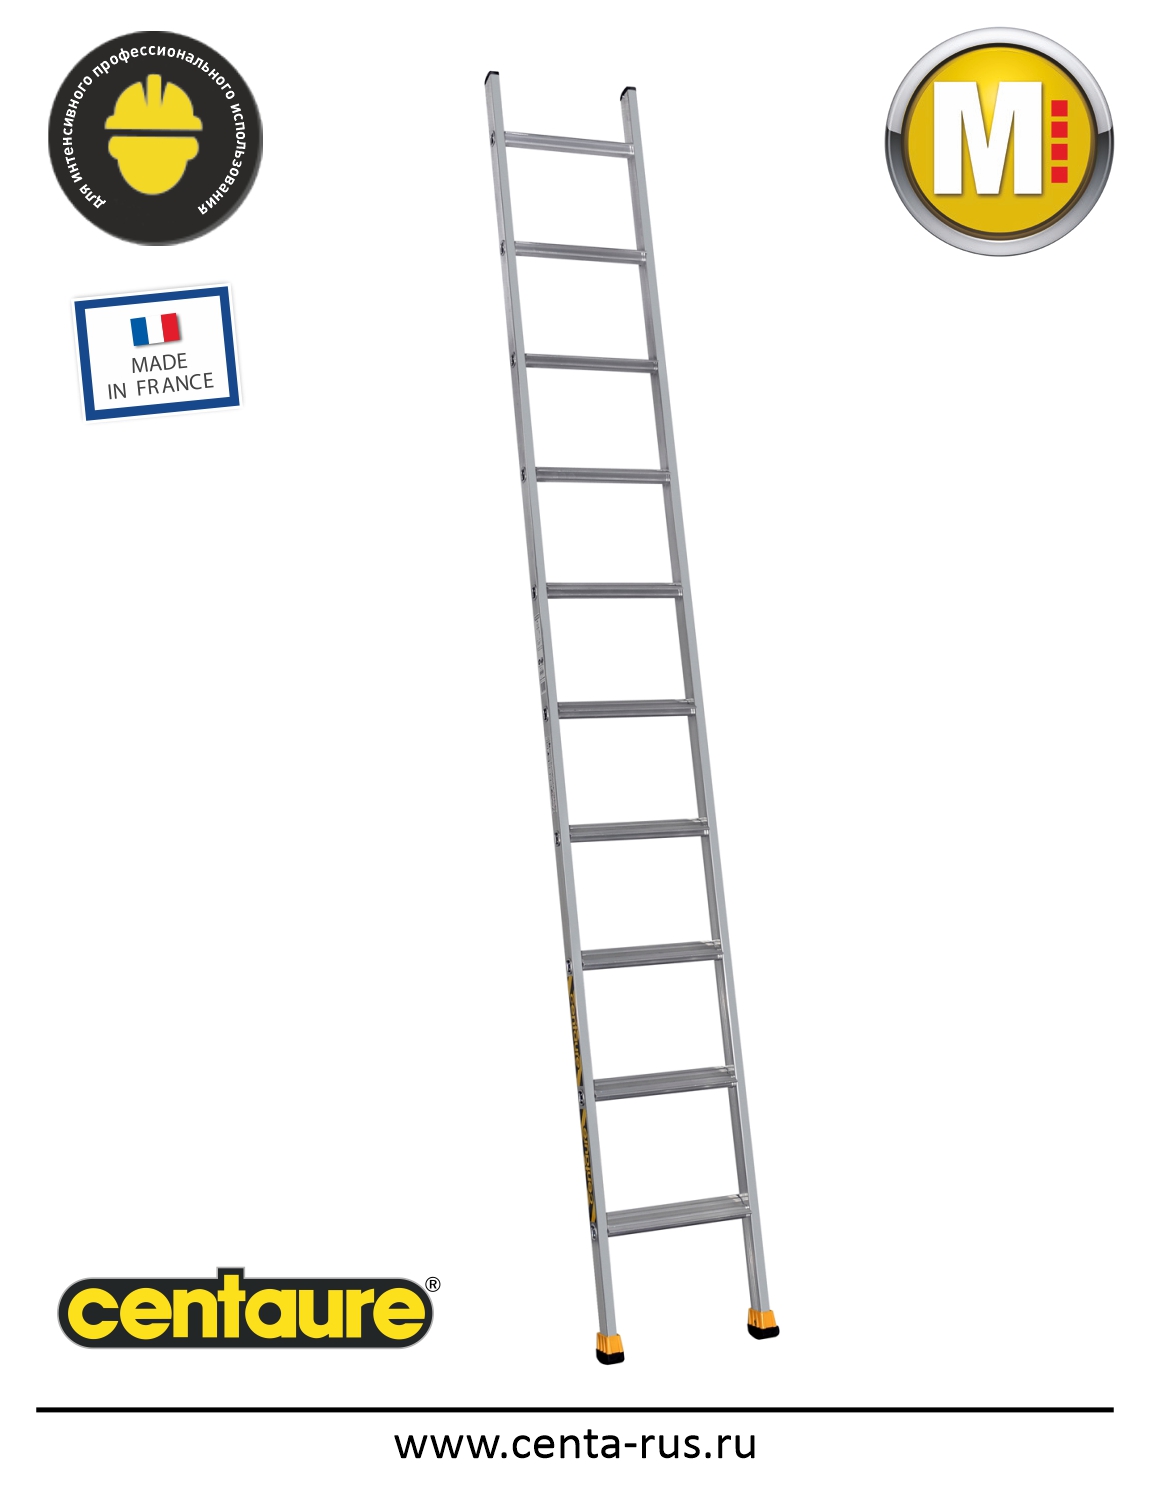 Односекционная лестница Centaure SM 10 ступеней 510910